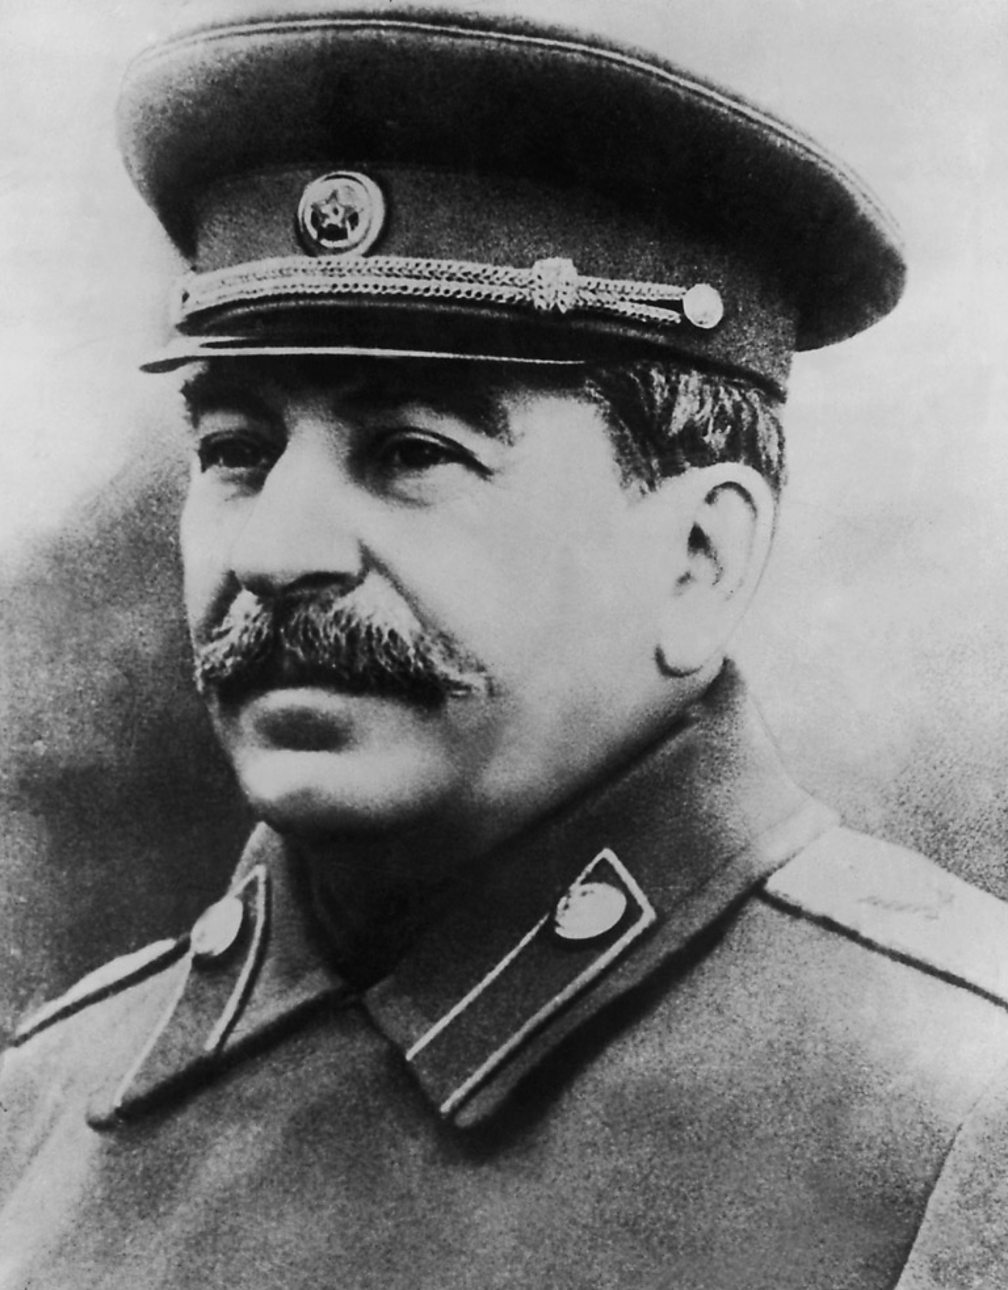 Сталин портрет чб